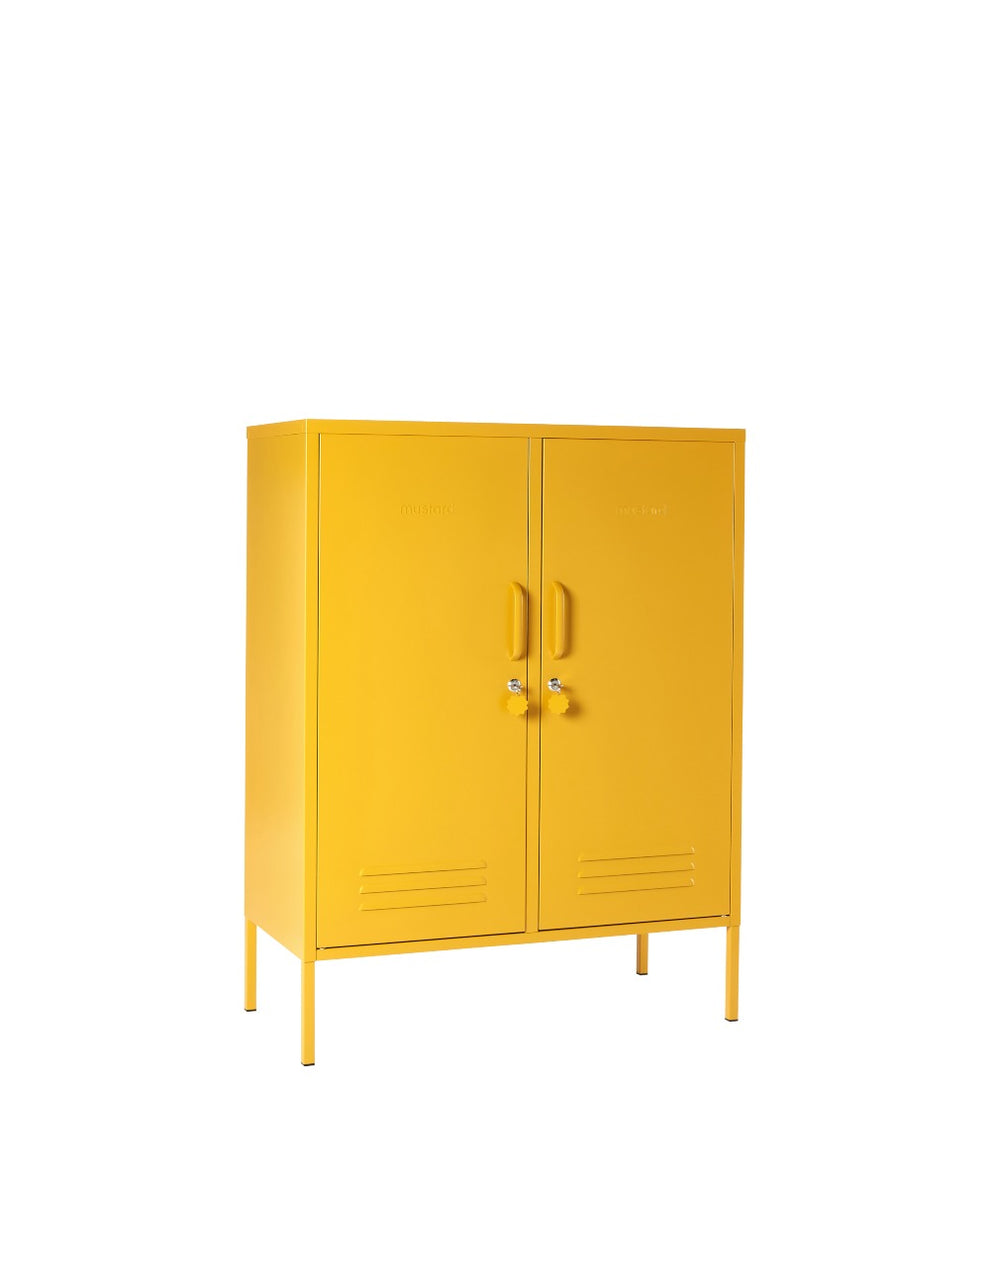 Mustard Made Lockers - The Midi Locker - Mustard Yellow